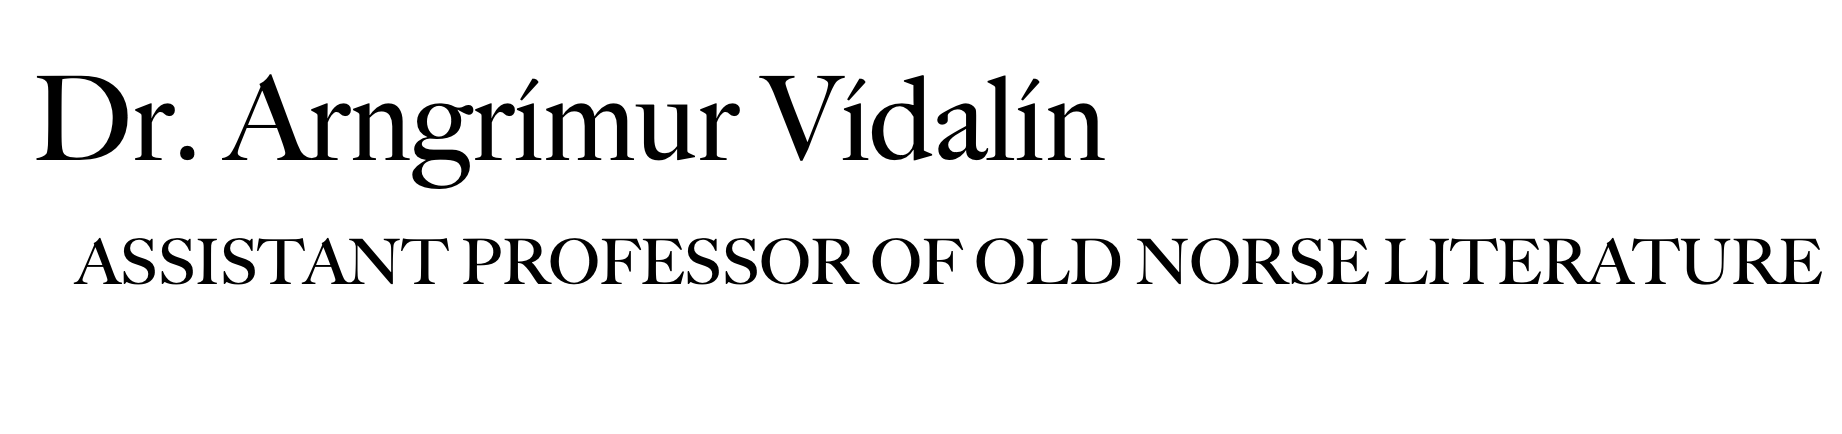 Dr. Arngrímur Vídalín, Assistant Professor of Old Norse-Medieval Icelandic Literature